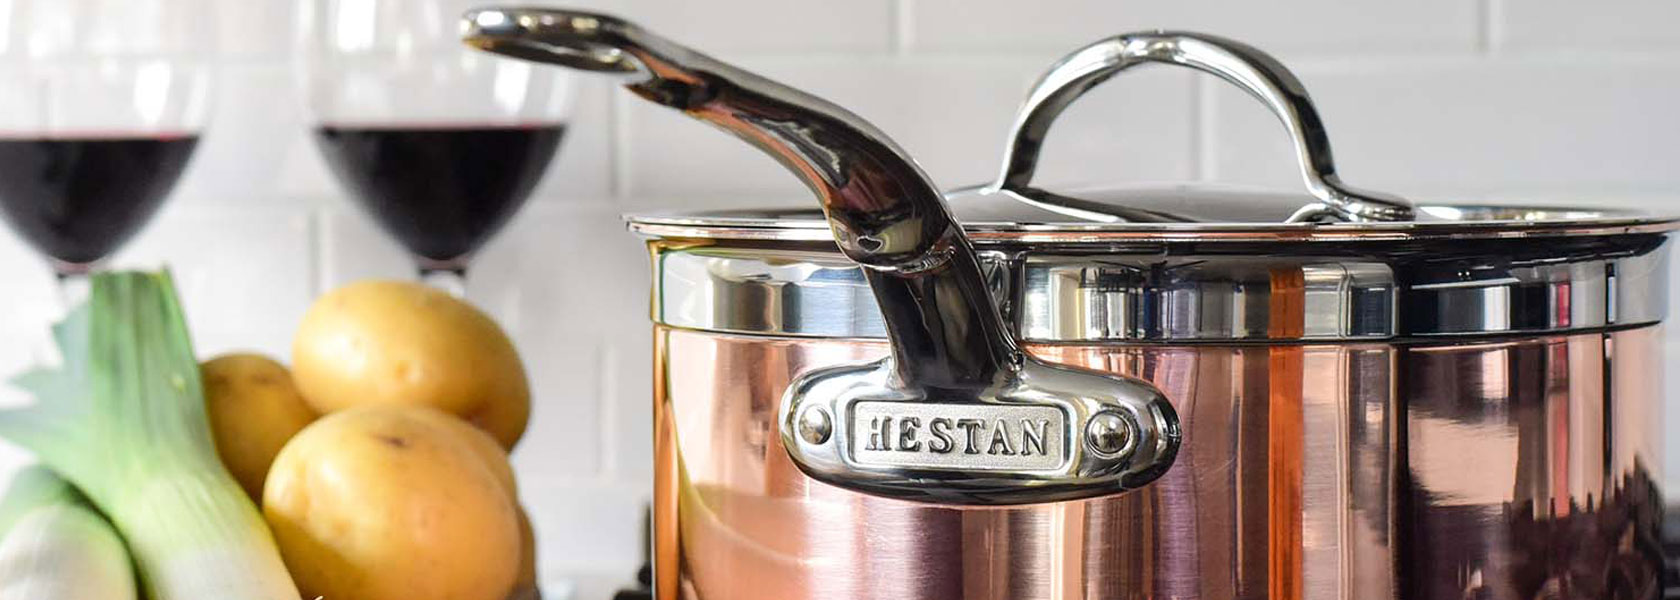 Hestan copper saucepan with lid